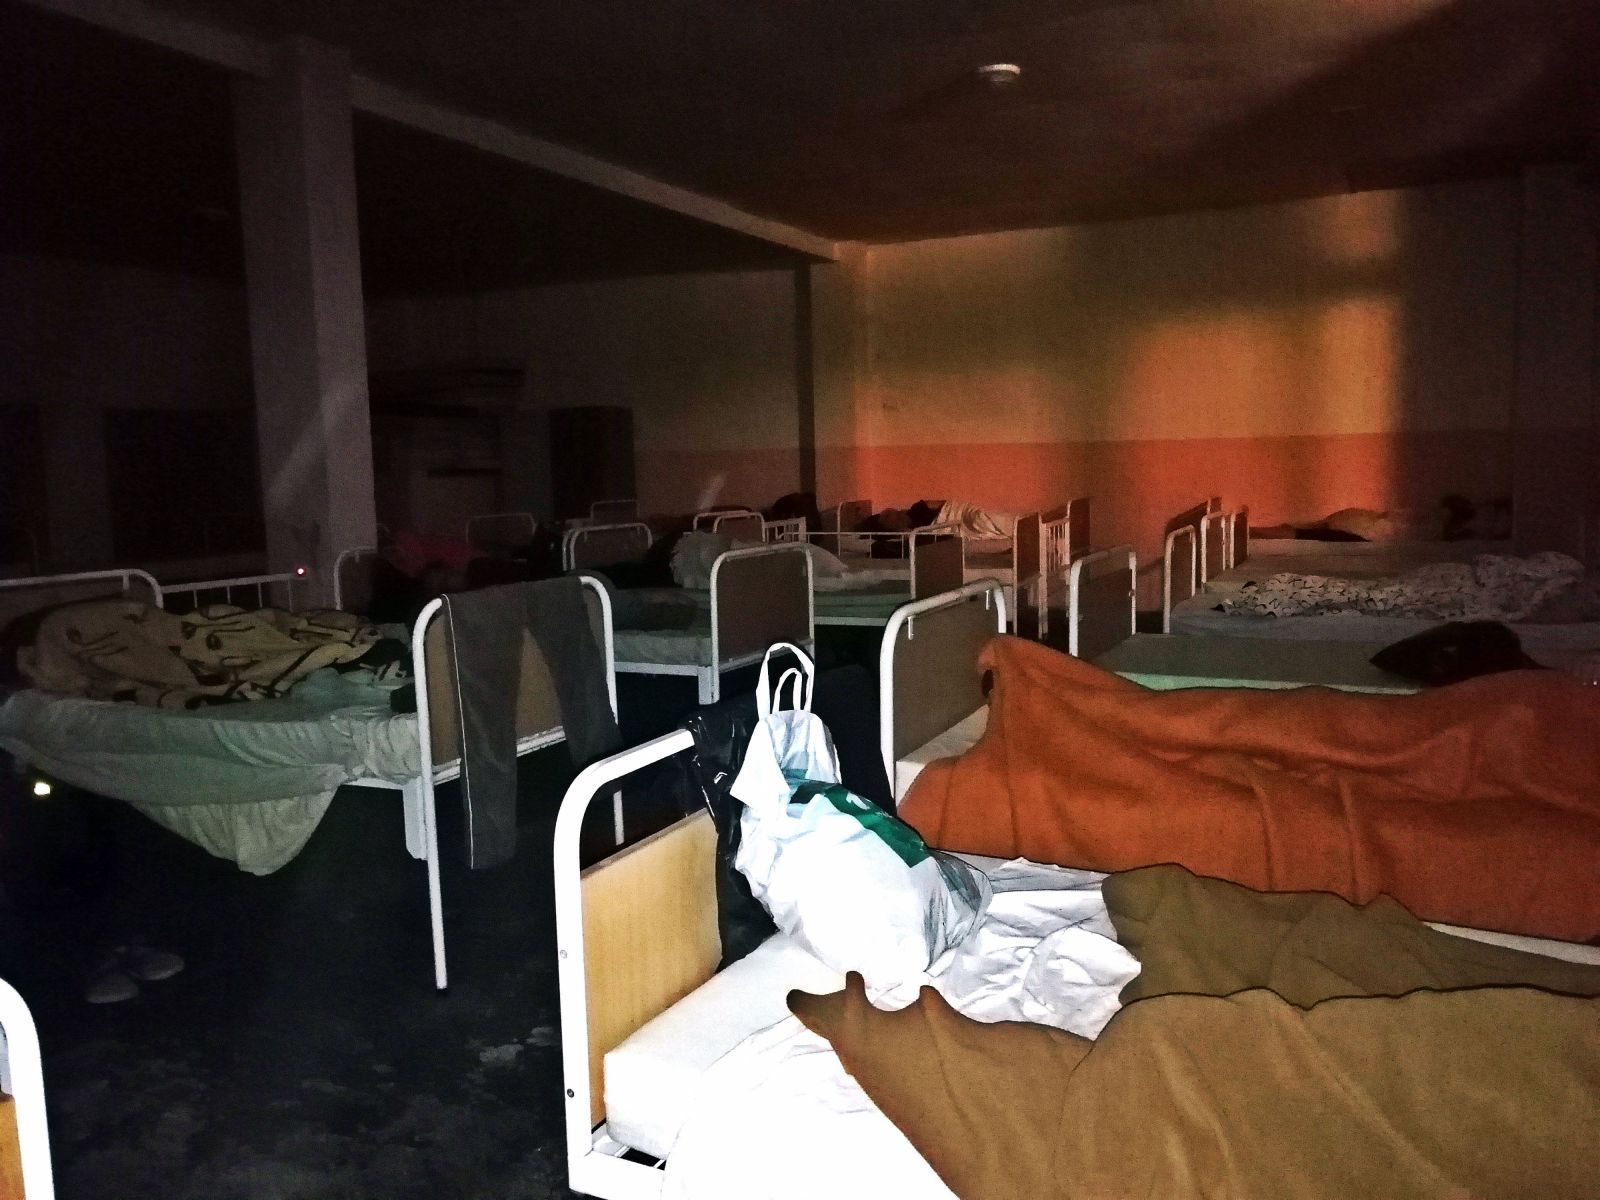 Noc v bratislavskej nocľahárni pre bezdomovcov: Alkohol skrytý na záchodoch, močenie mimo toaliet a empatickí sociálni pracovníci